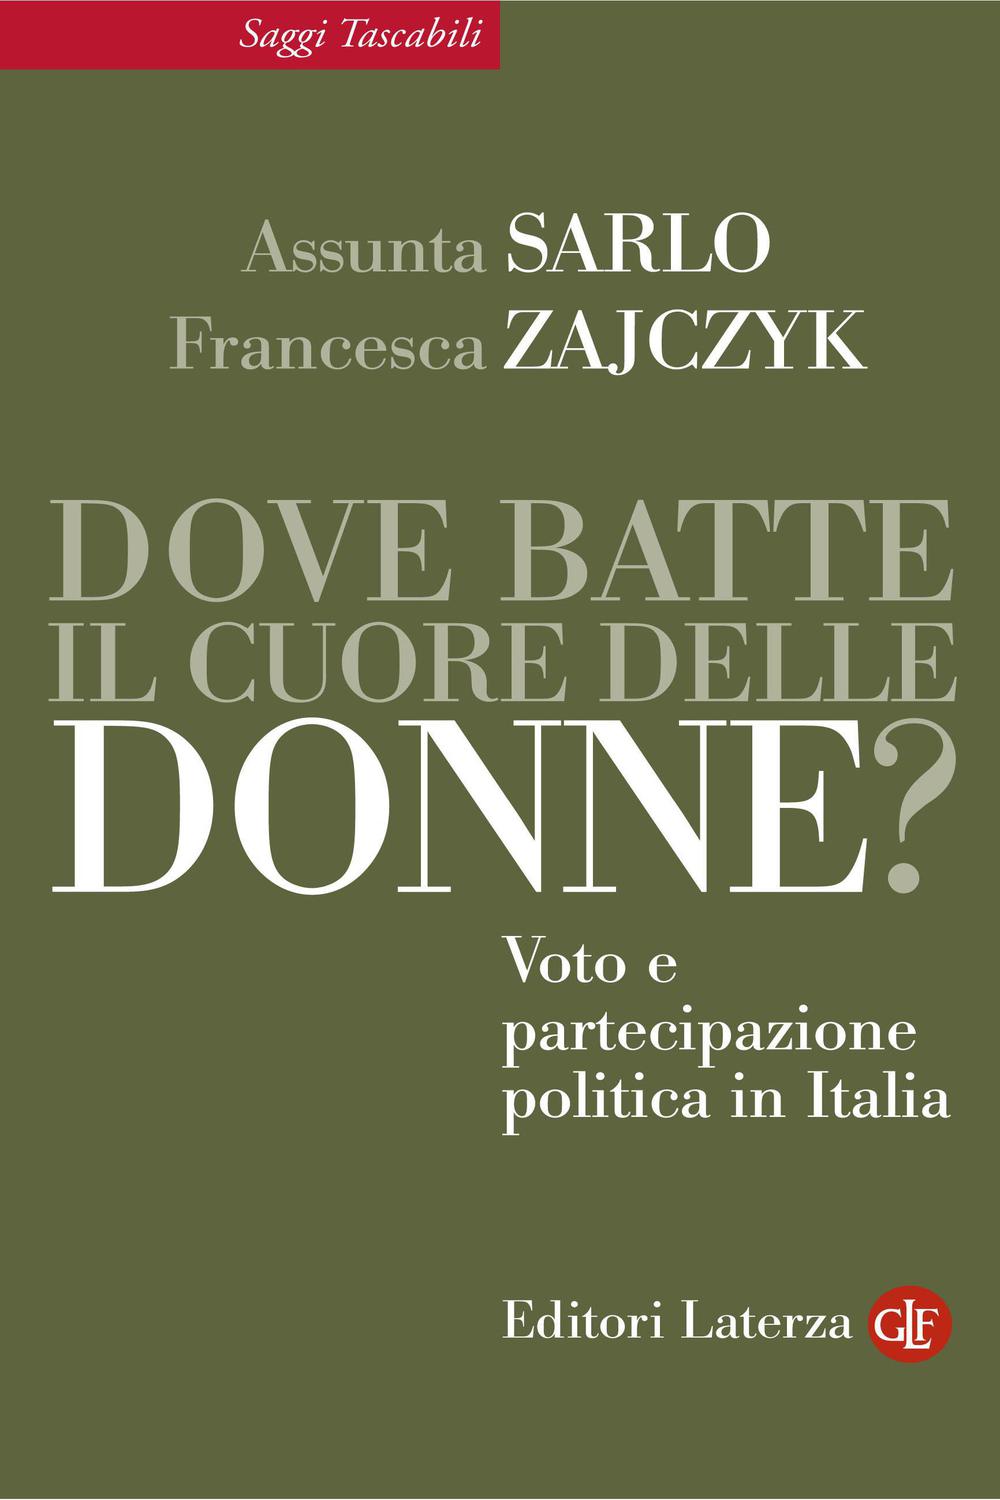 Dove batte il cuore delle donne? Voto e partecipazione politica in Italia - Assunta Sarlo, Francesca Zajczyk